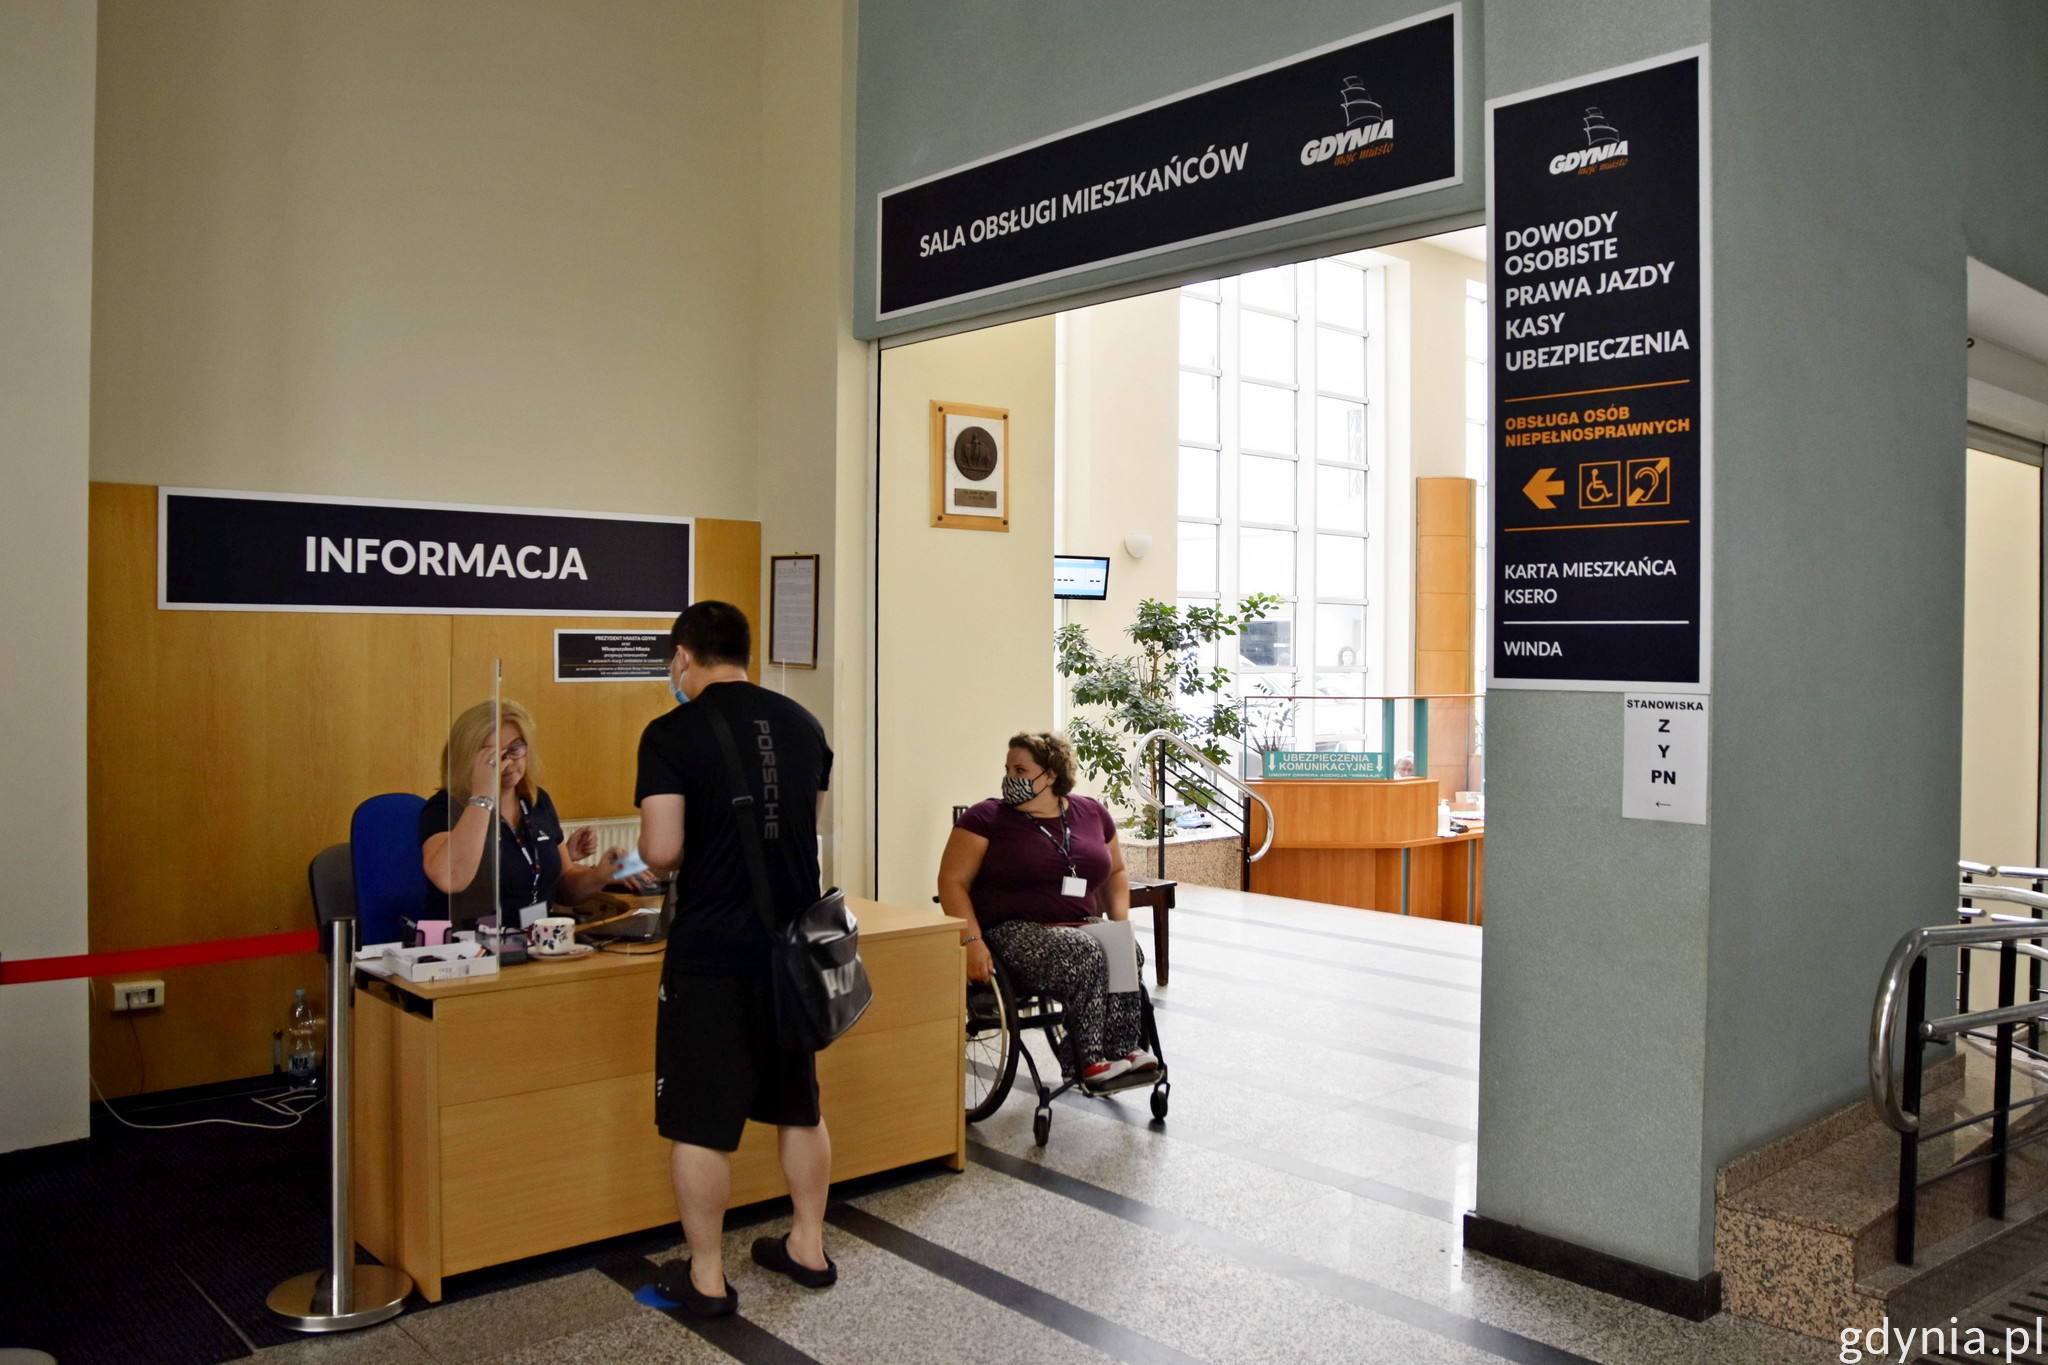 Wejście na salę obsługi mieszkańców w budynku Urzędu Miasta Gdyni.